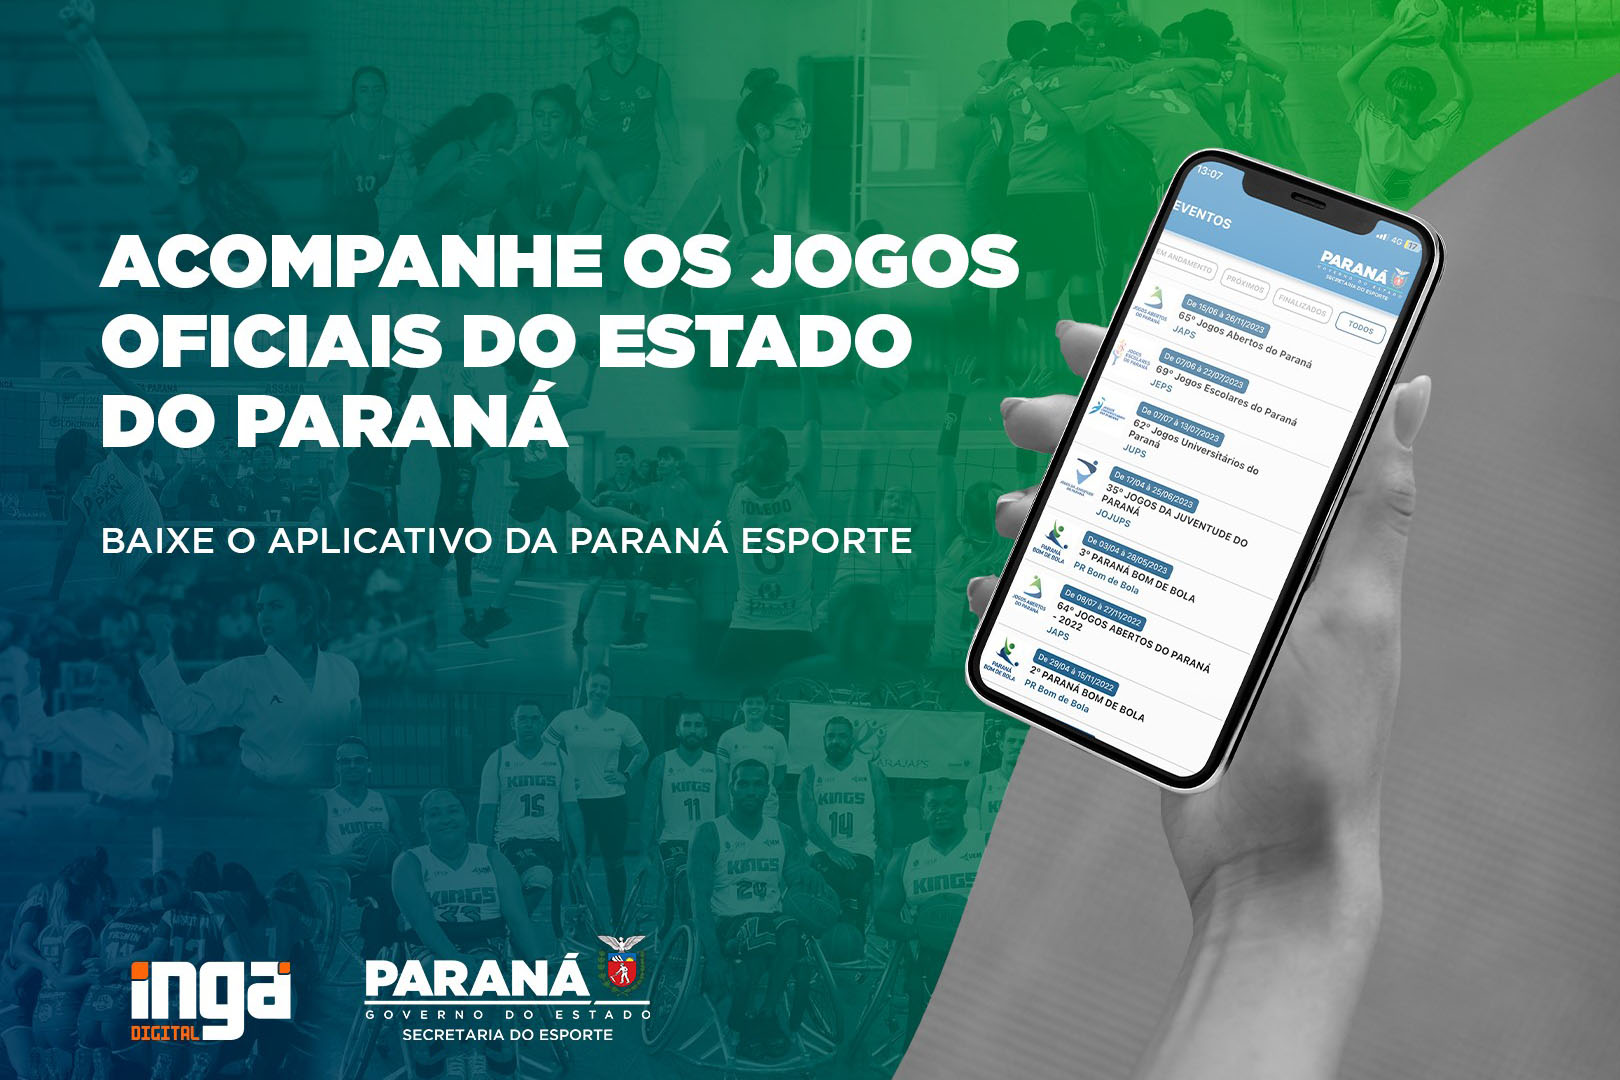 Smartphone é a principal plataforma de jogos digitais no Brasil